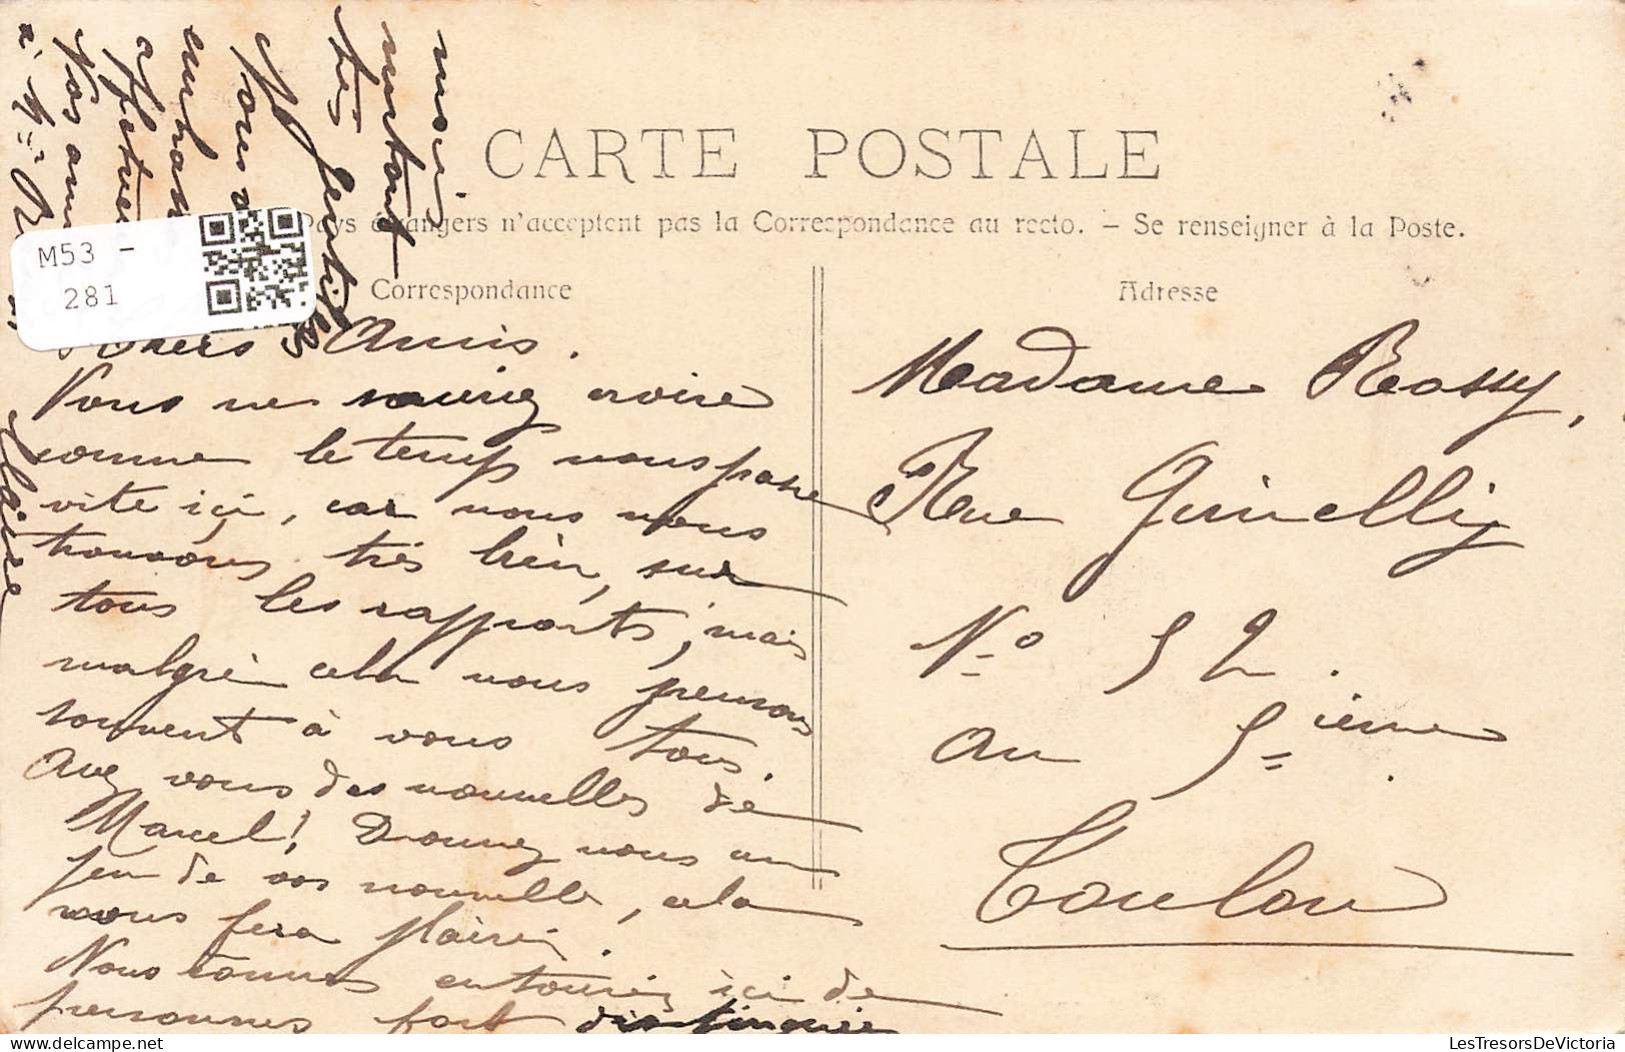 FRANCE - Environs D'Aix En Provence - Digue Du Barrage Zola - Vue Générale - Carte Postale Ancienne - Aix En Provence